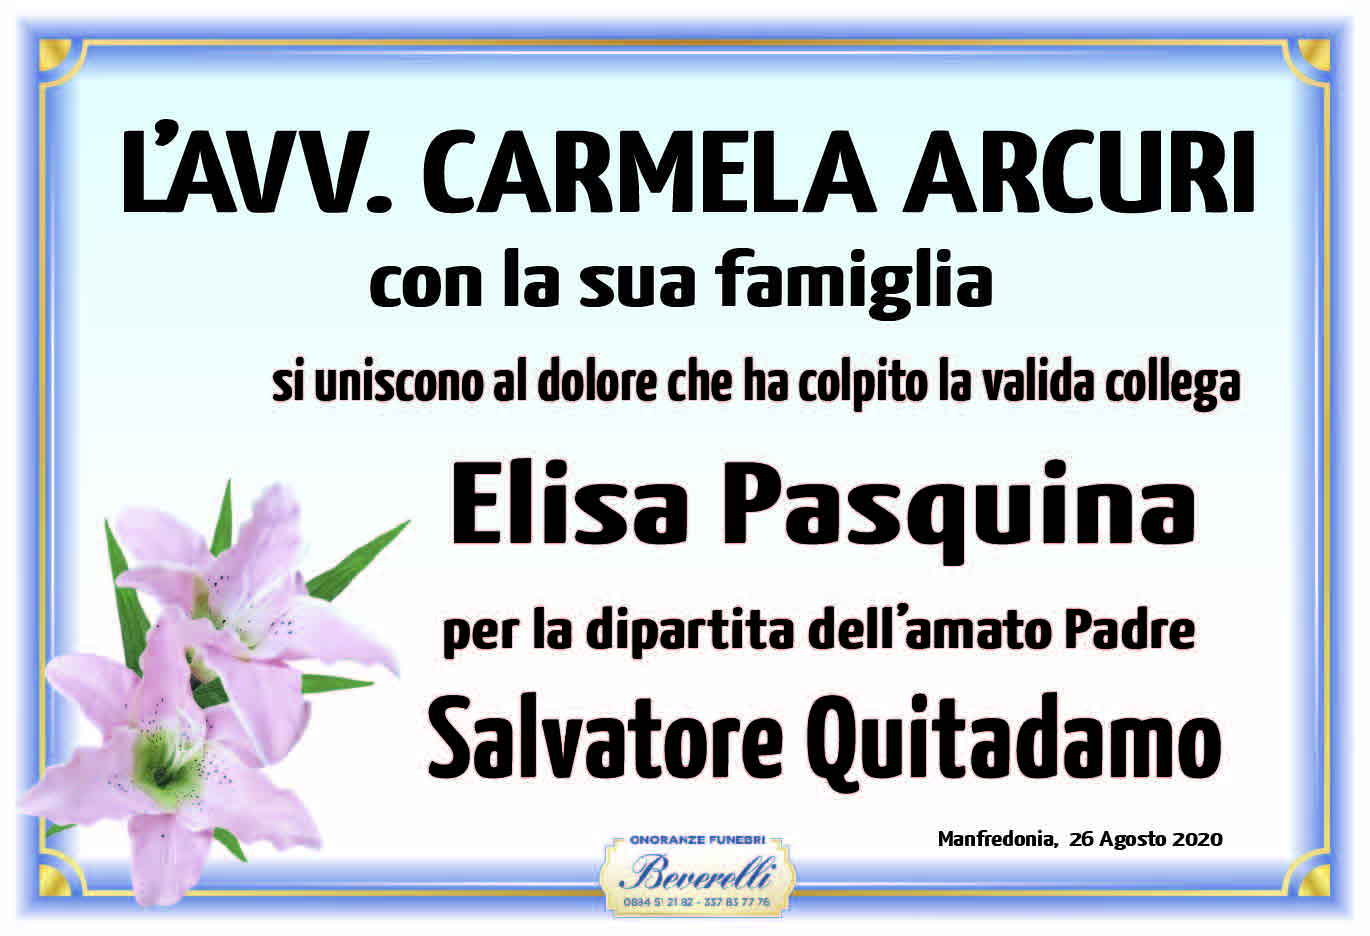 Avv. Carmela Arcuri e famiglia